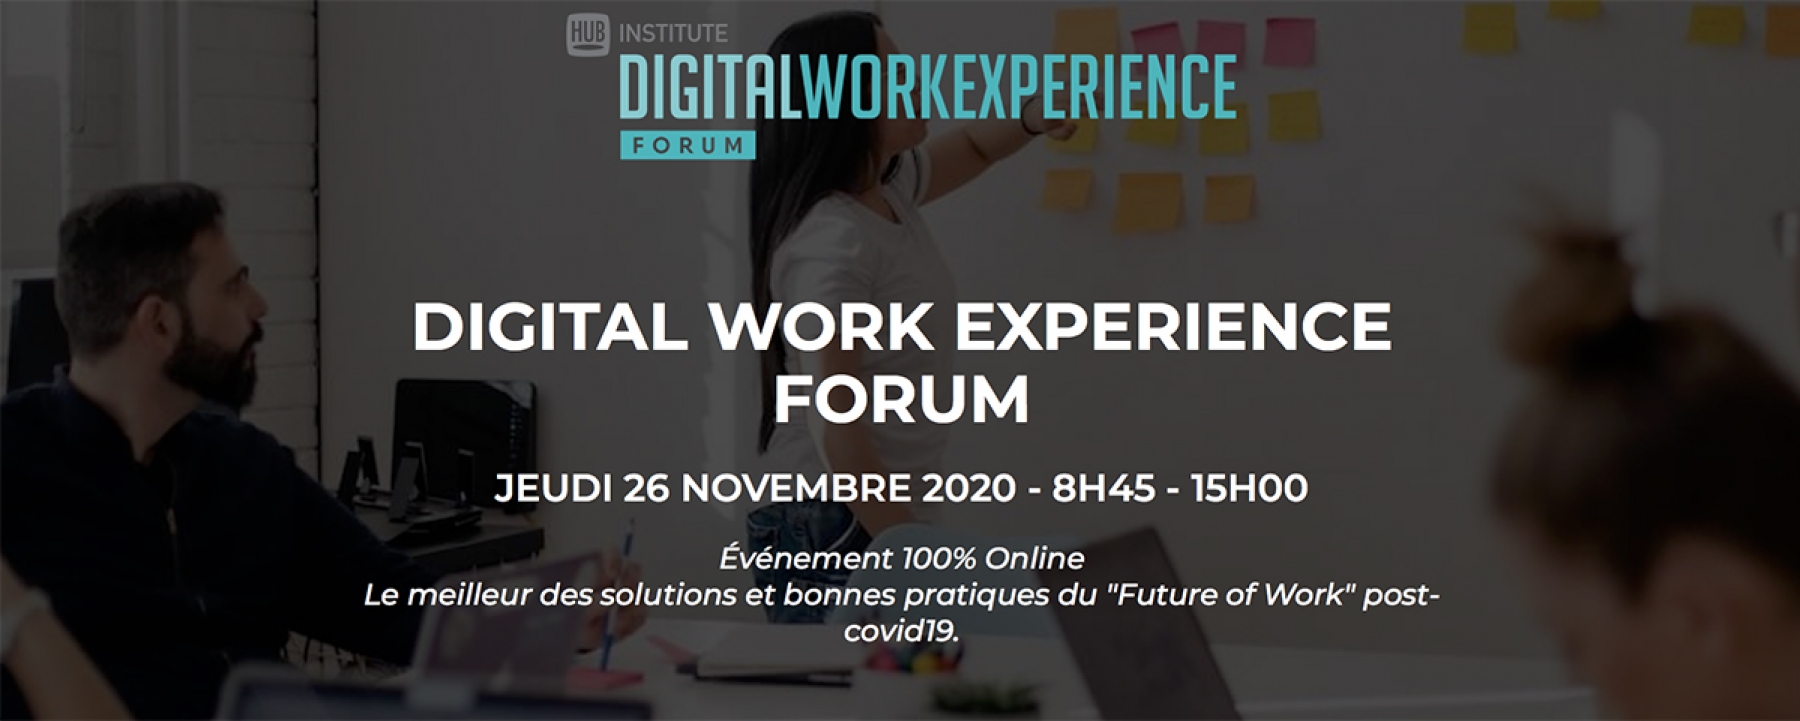 Digital Work Experience Forum, un événement organisé le 26 novembre par le Hub Institute